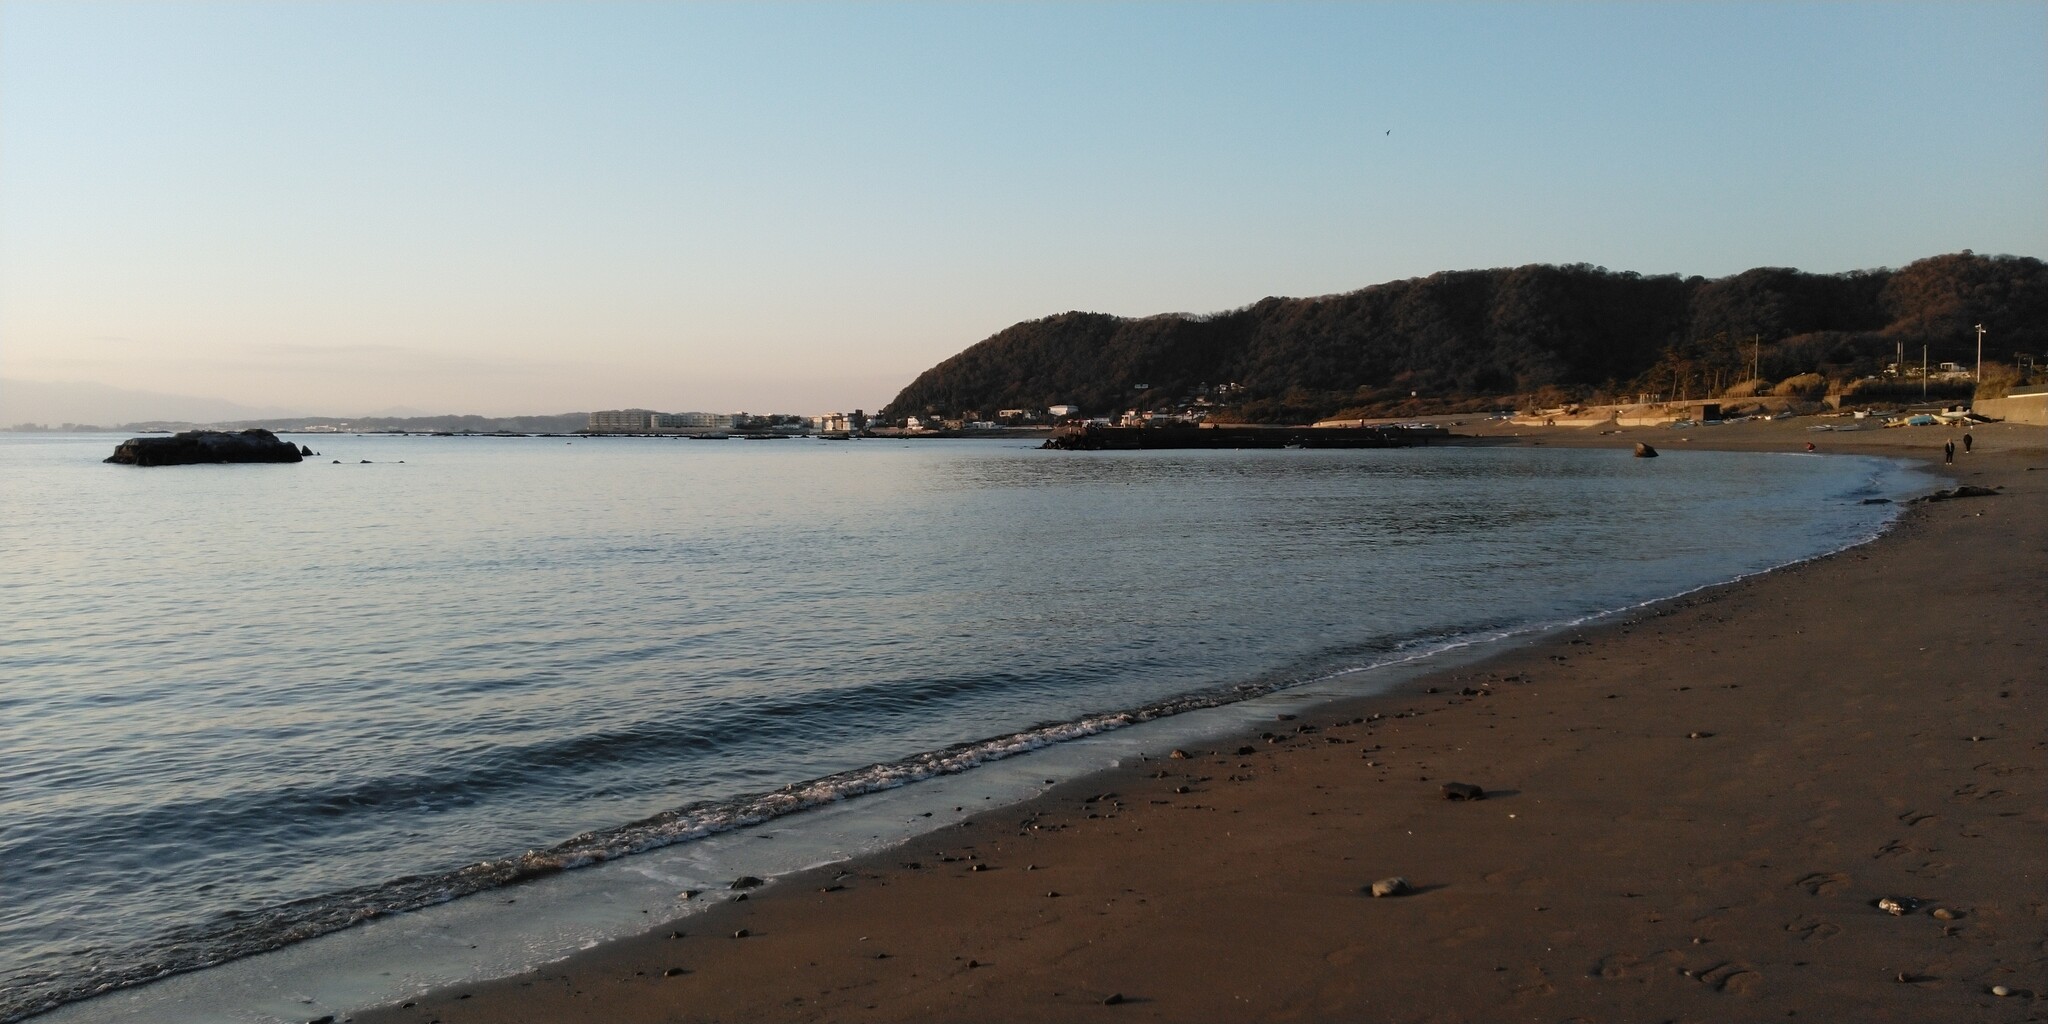 長者ヶ崎海水浴場 神奈川の景勝50選の一つ 大浜海岸 歴史オタクの郷土史グルメ旅 久良岐のよし